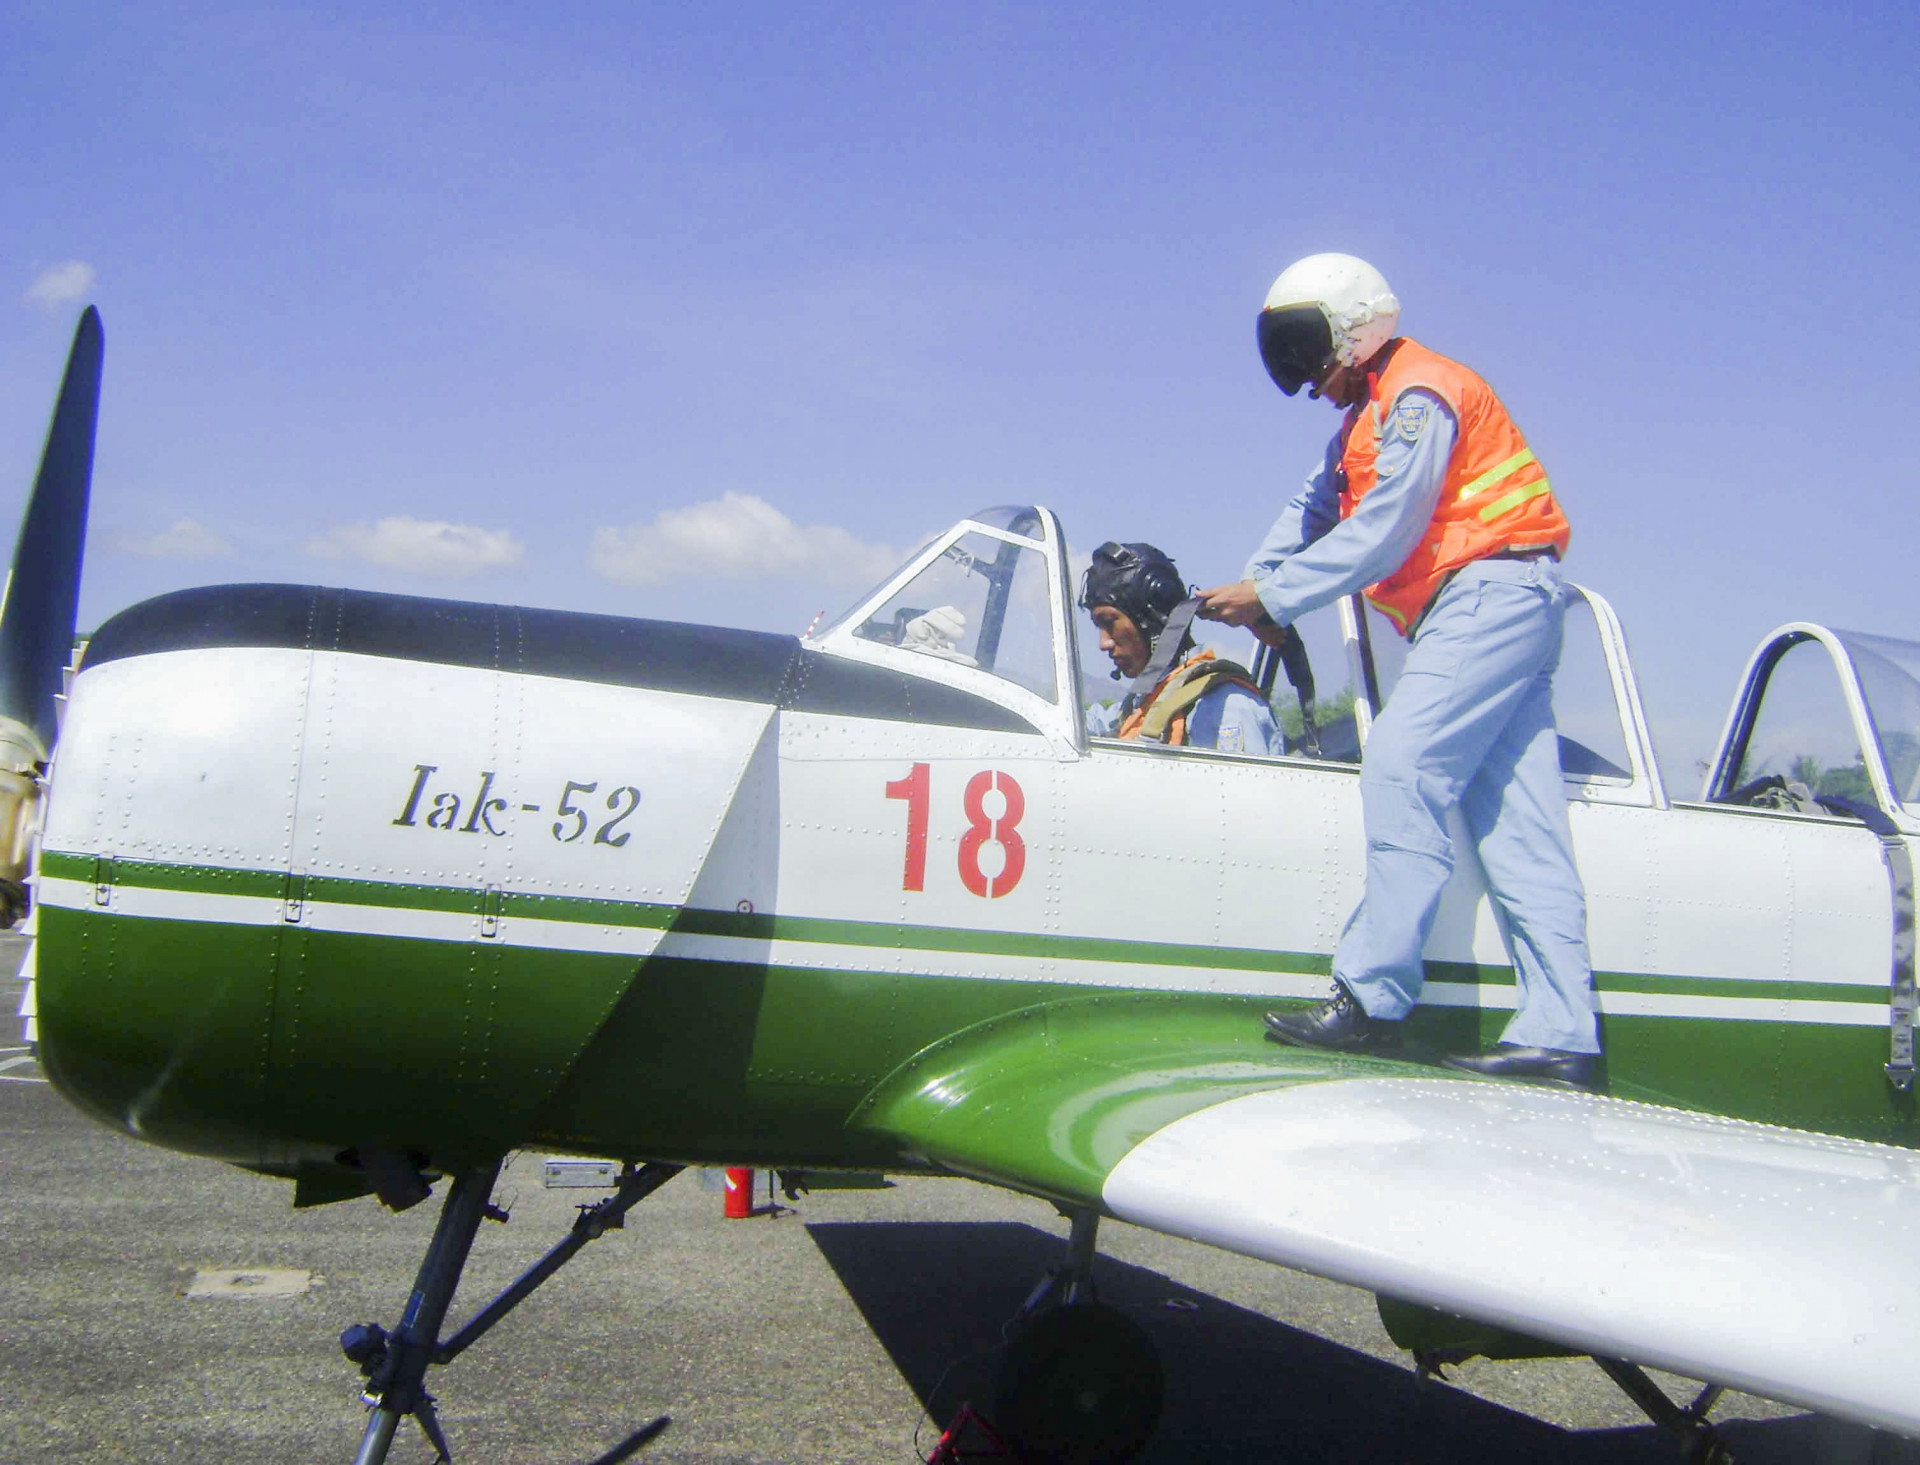 Máy bay Iak - 52 tại Trung đoàn 920 thời còn ở sân bay Nha Trang.